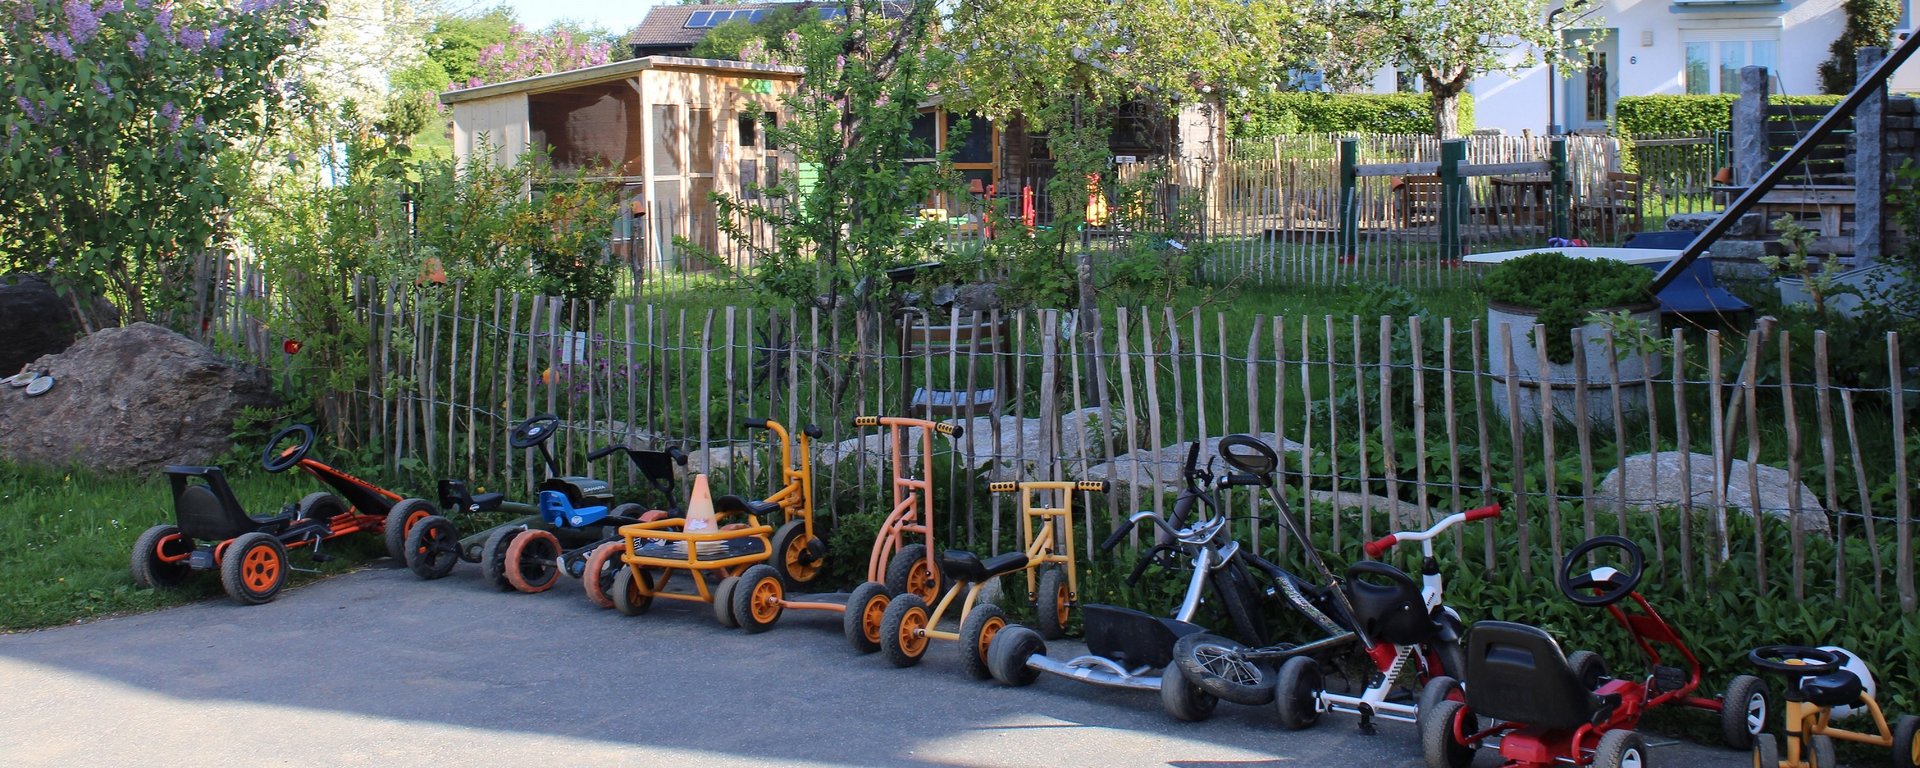 Viele Fahrzeuge zum Austoben auf dem Ferienhof Meininger